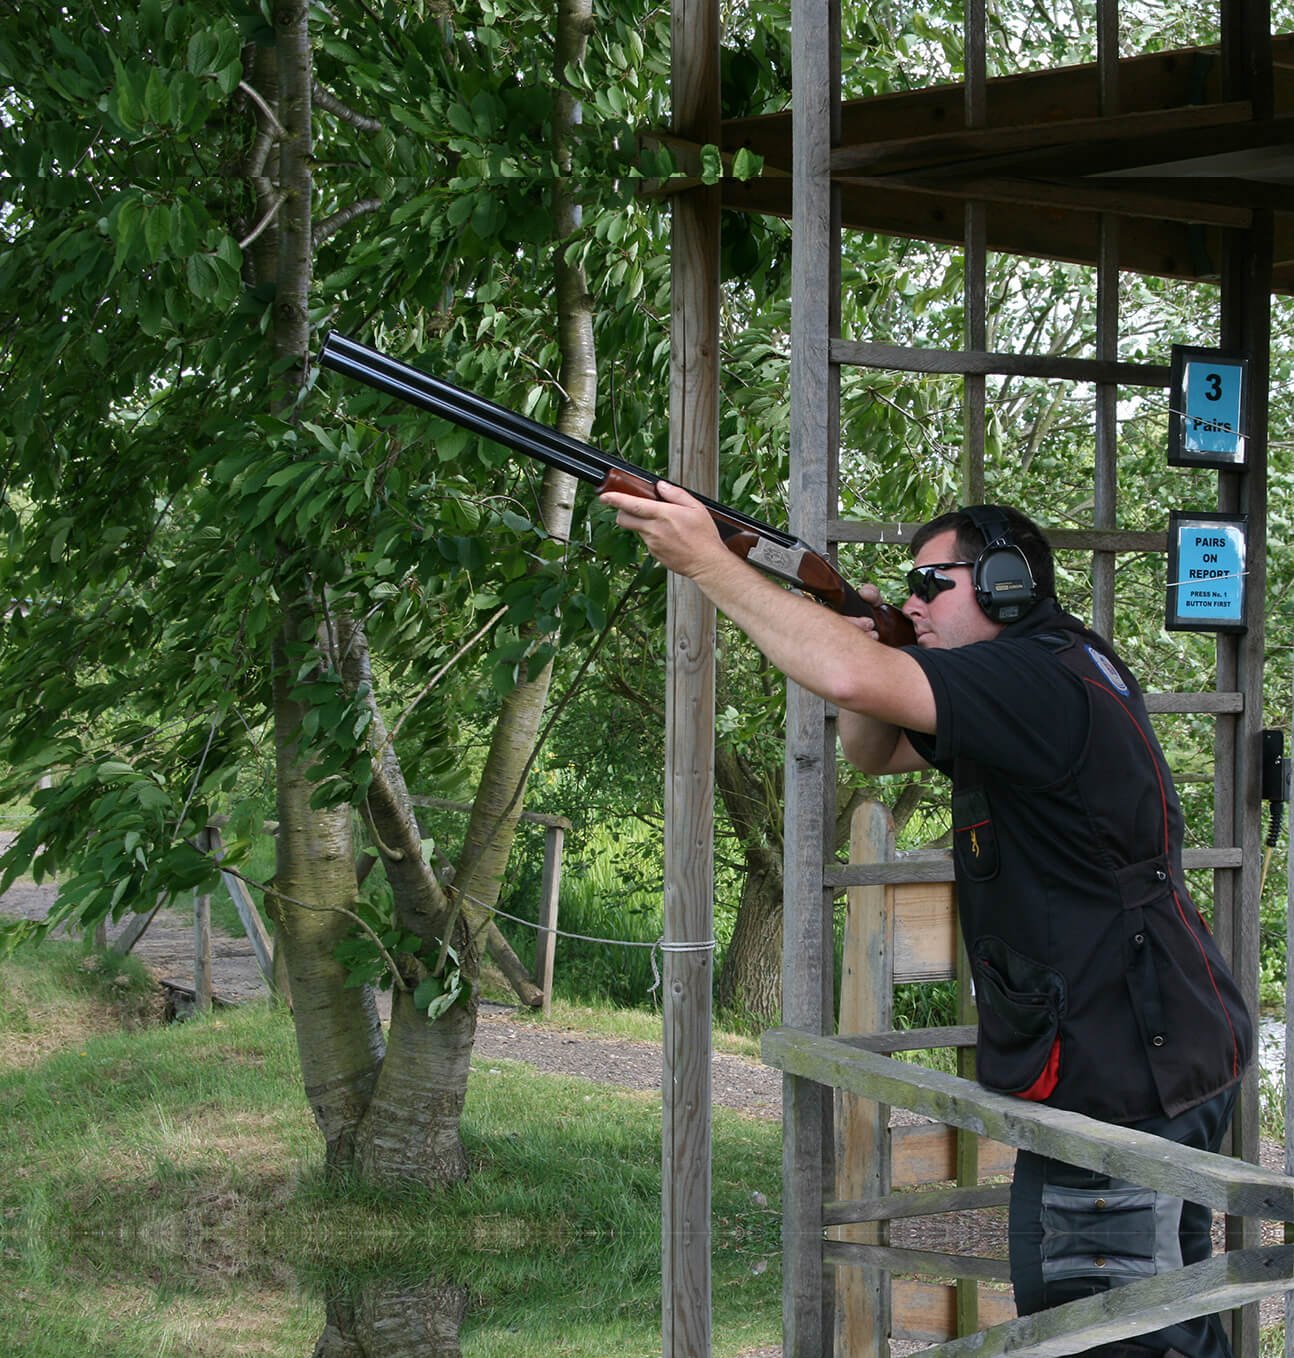 A man shooting at Wedgnock shooting grounds